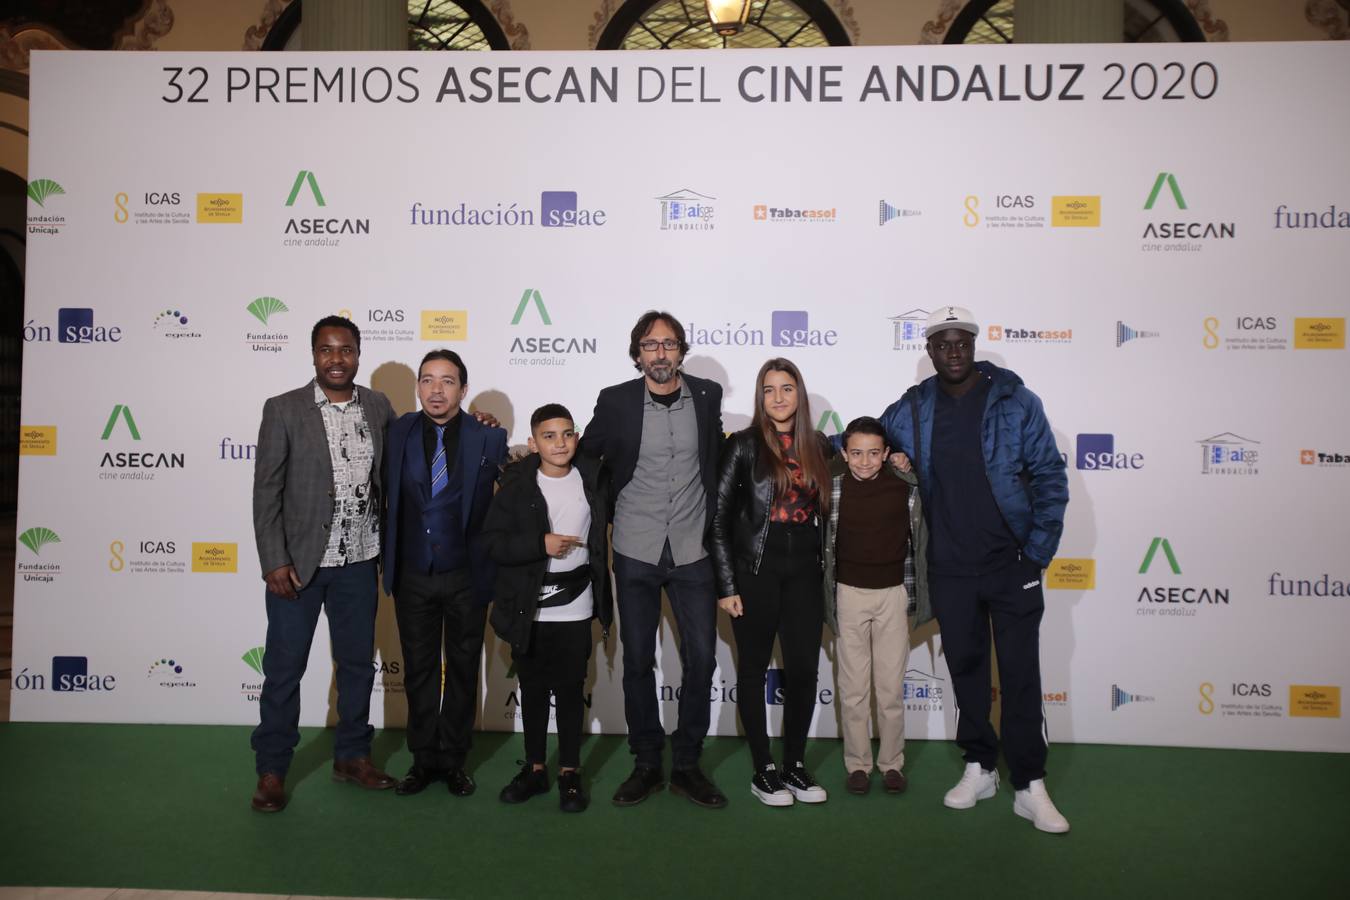 La pasarela de la fiesta del cine andaluz, en imágenes